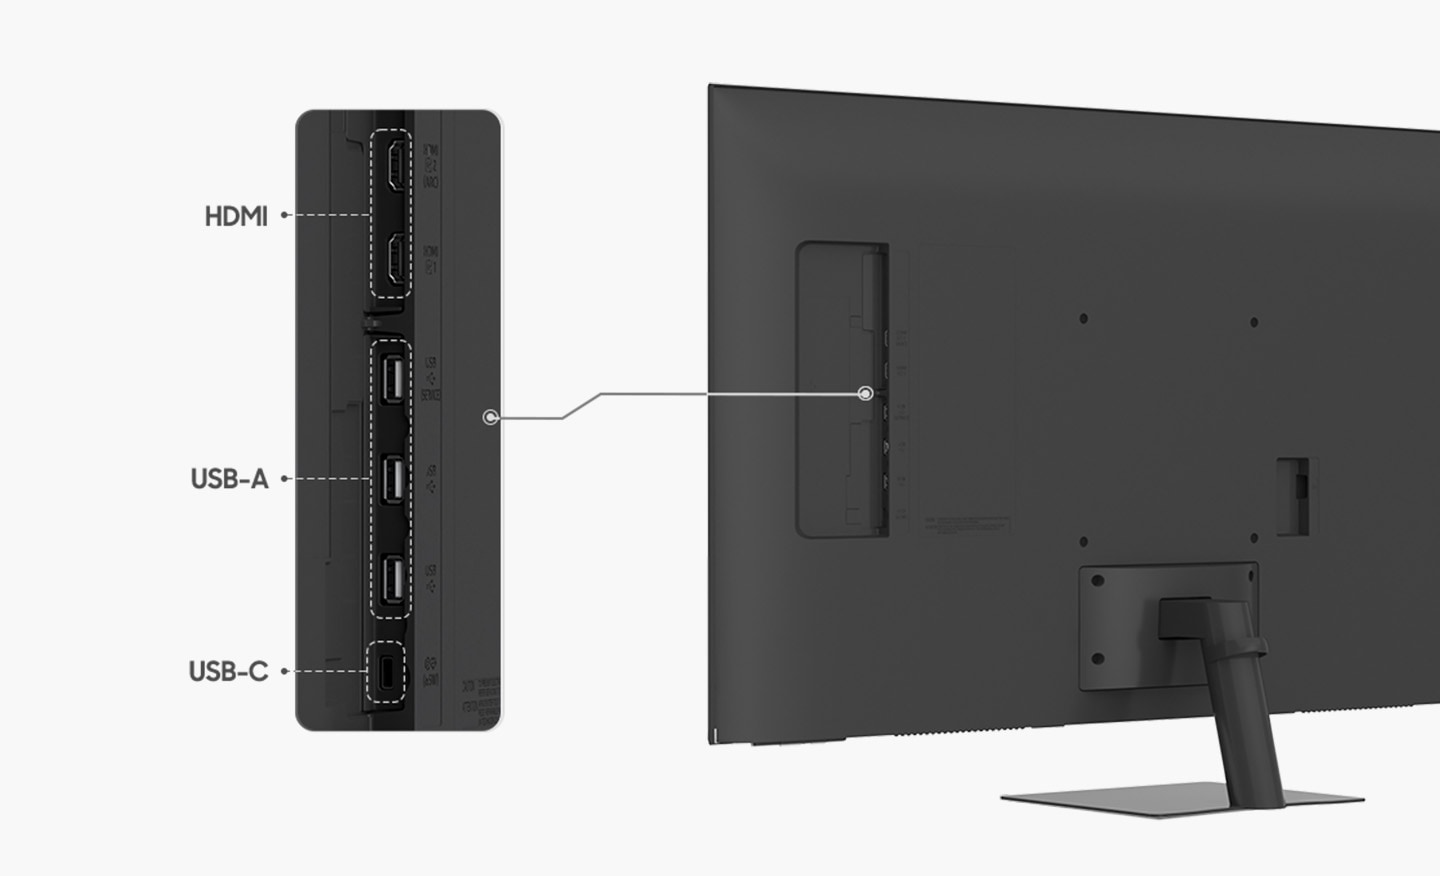 Справа находится монитор, а рядом с ним - увеличенные порты. Порты монитора - это USB-C, два HDMI и три USB-A.